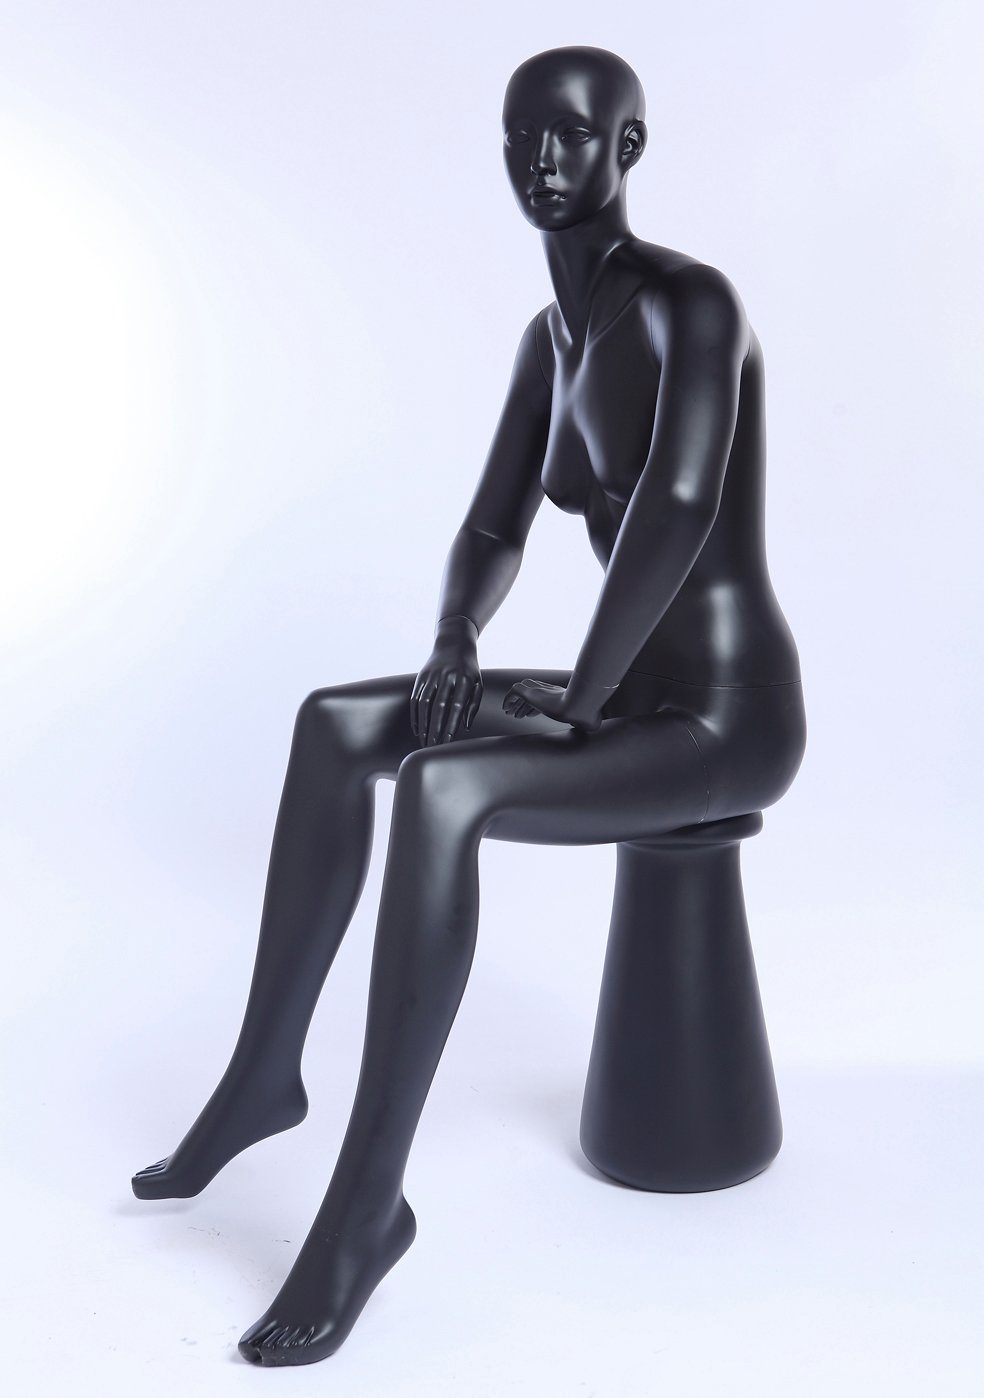 Eurotondisplay Mann weiß geformtes sitzend Gesicht Schaufensterpuppe oder schwarz neu Schneiderpuppe